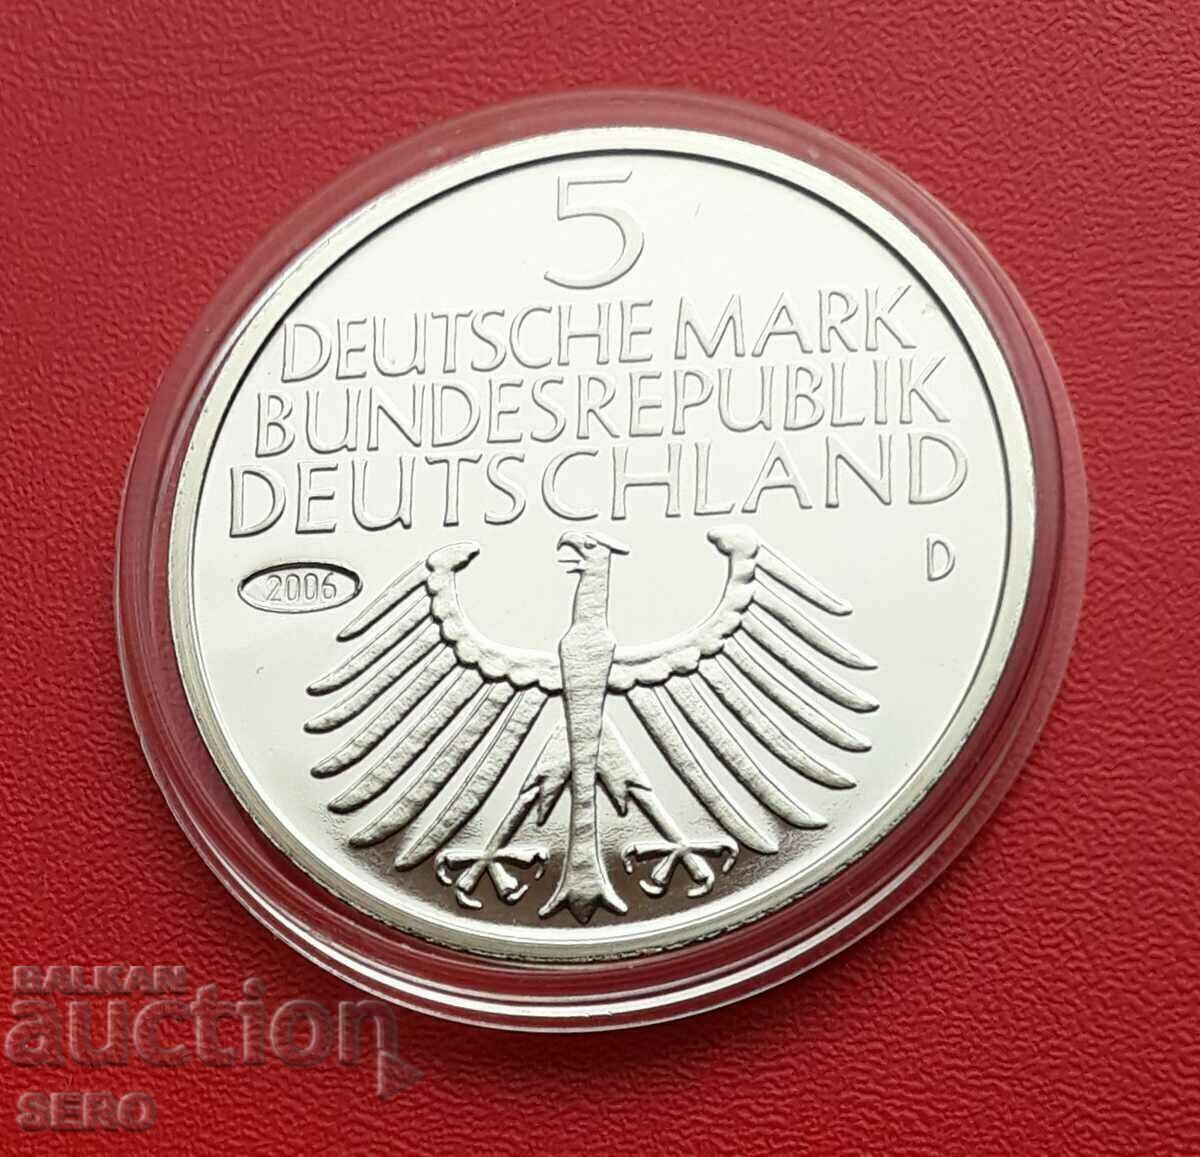 Германия-медал-реплика 2006 на 5 марки 1952